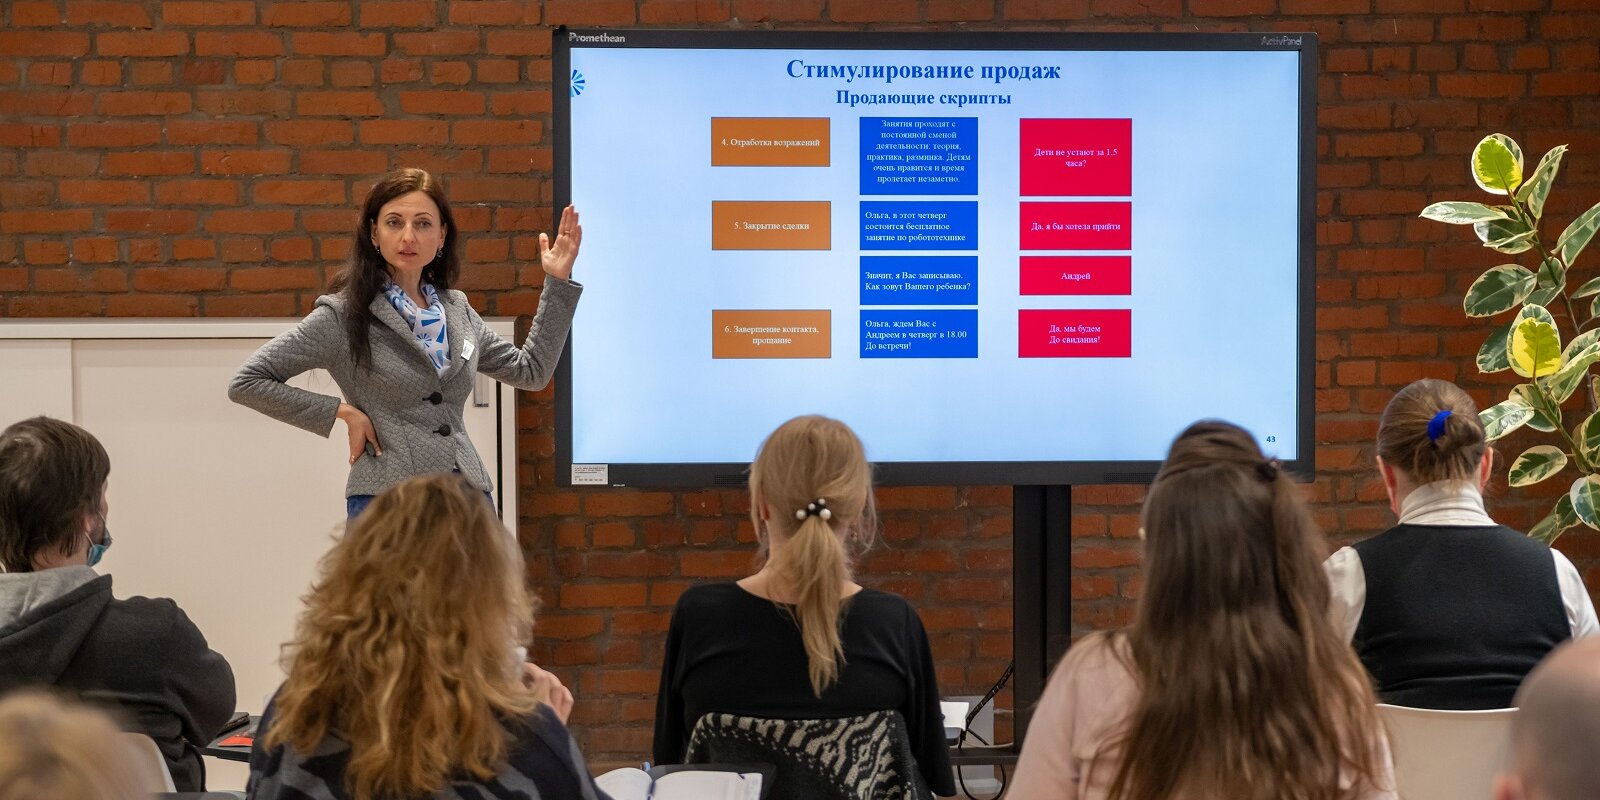 Работа для выпускников: как молодым специалистам помогают трудоустроиться. Фото: сайт мэра Москвы